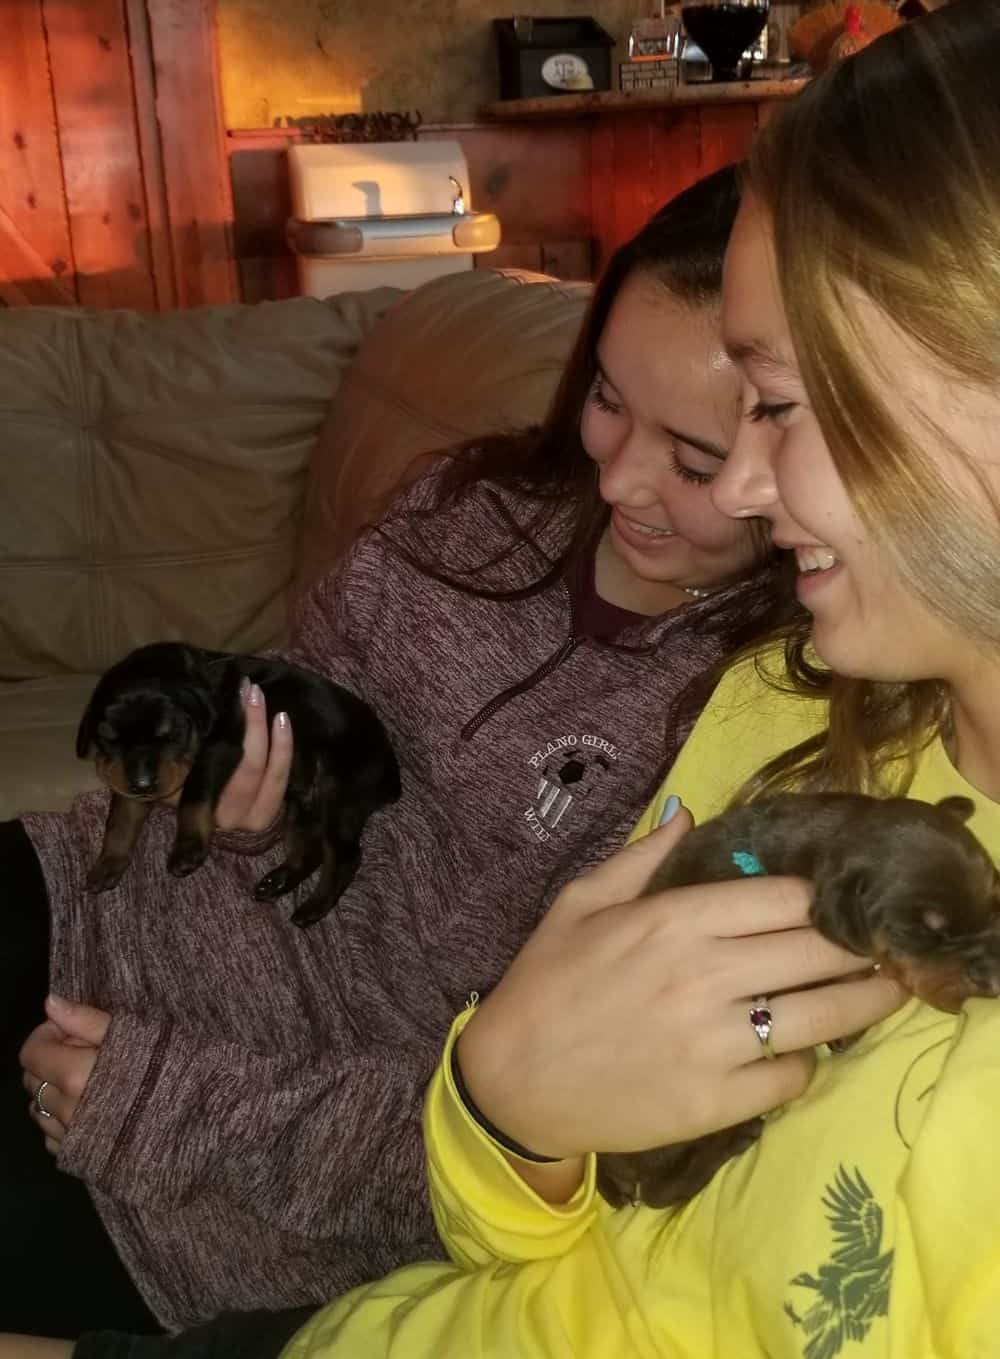 1 week old doberman puppies